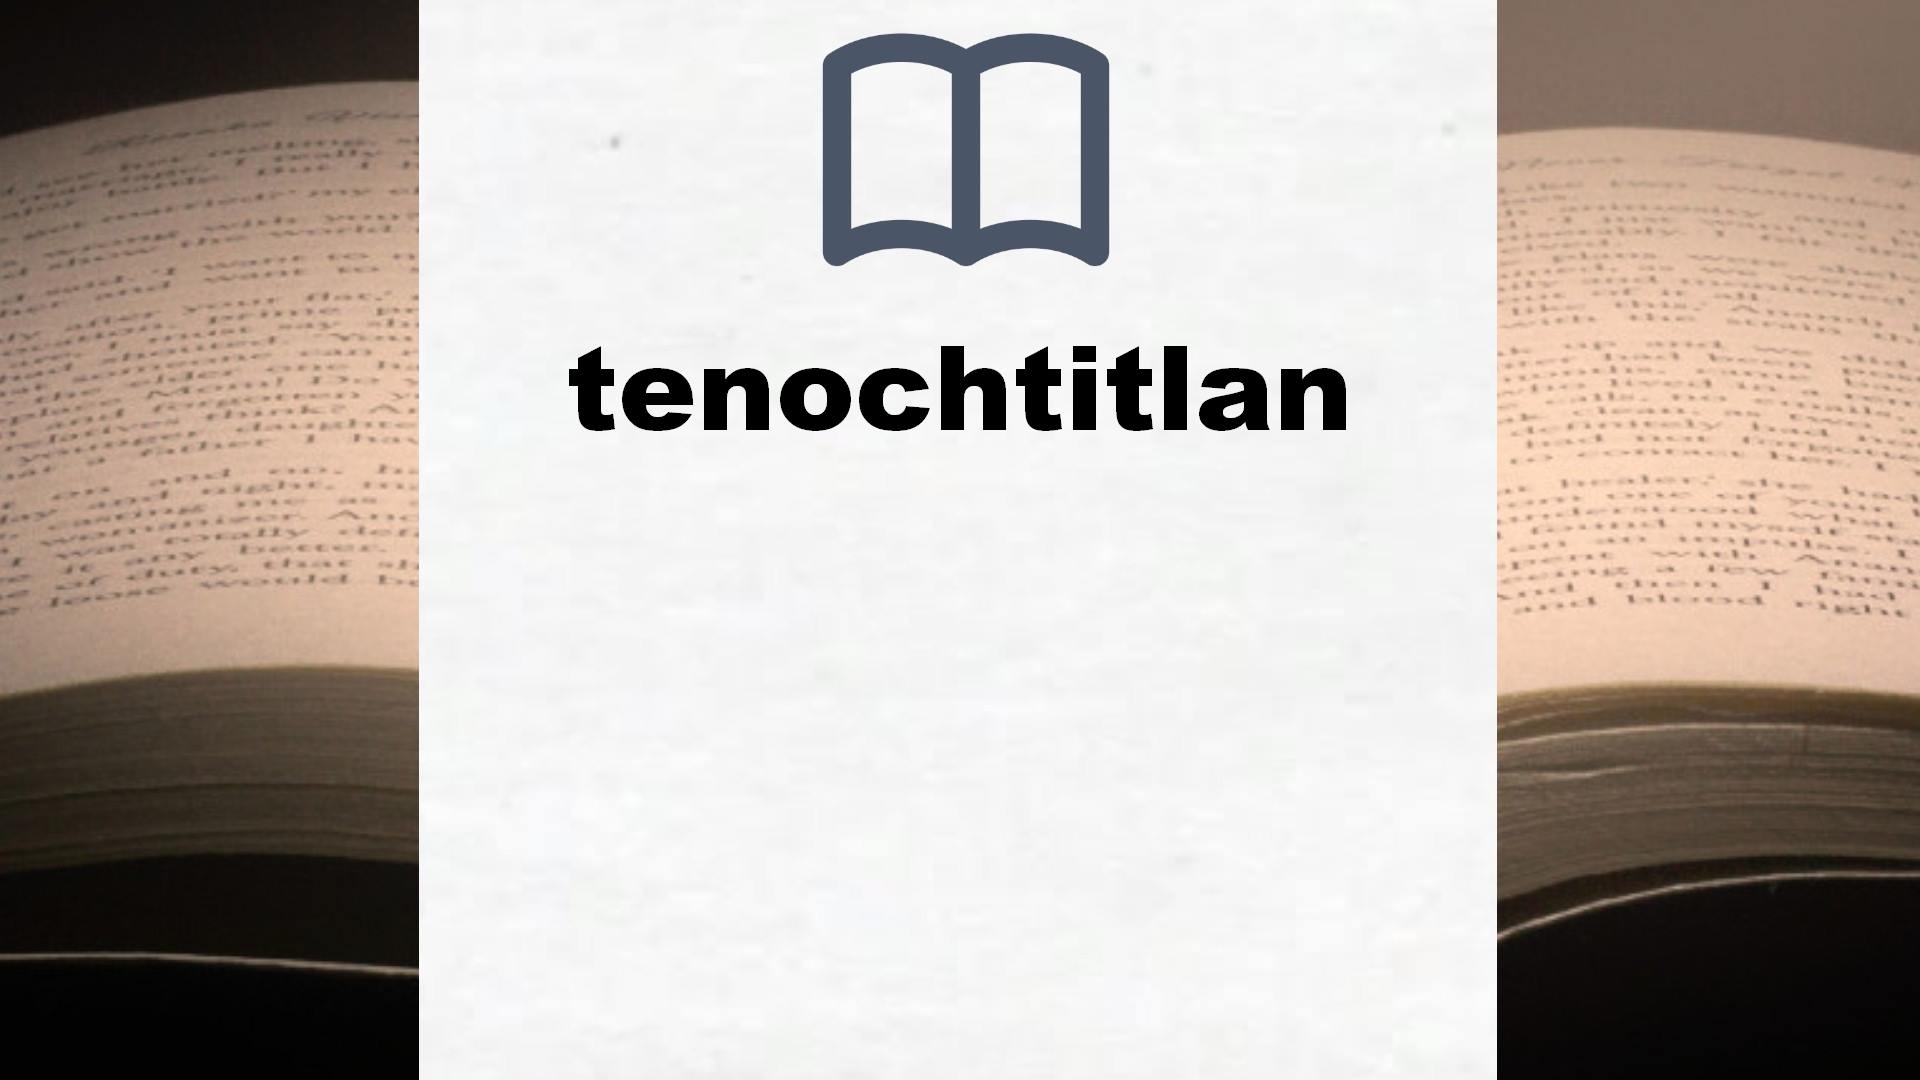 Libros sobre tenochtitlan